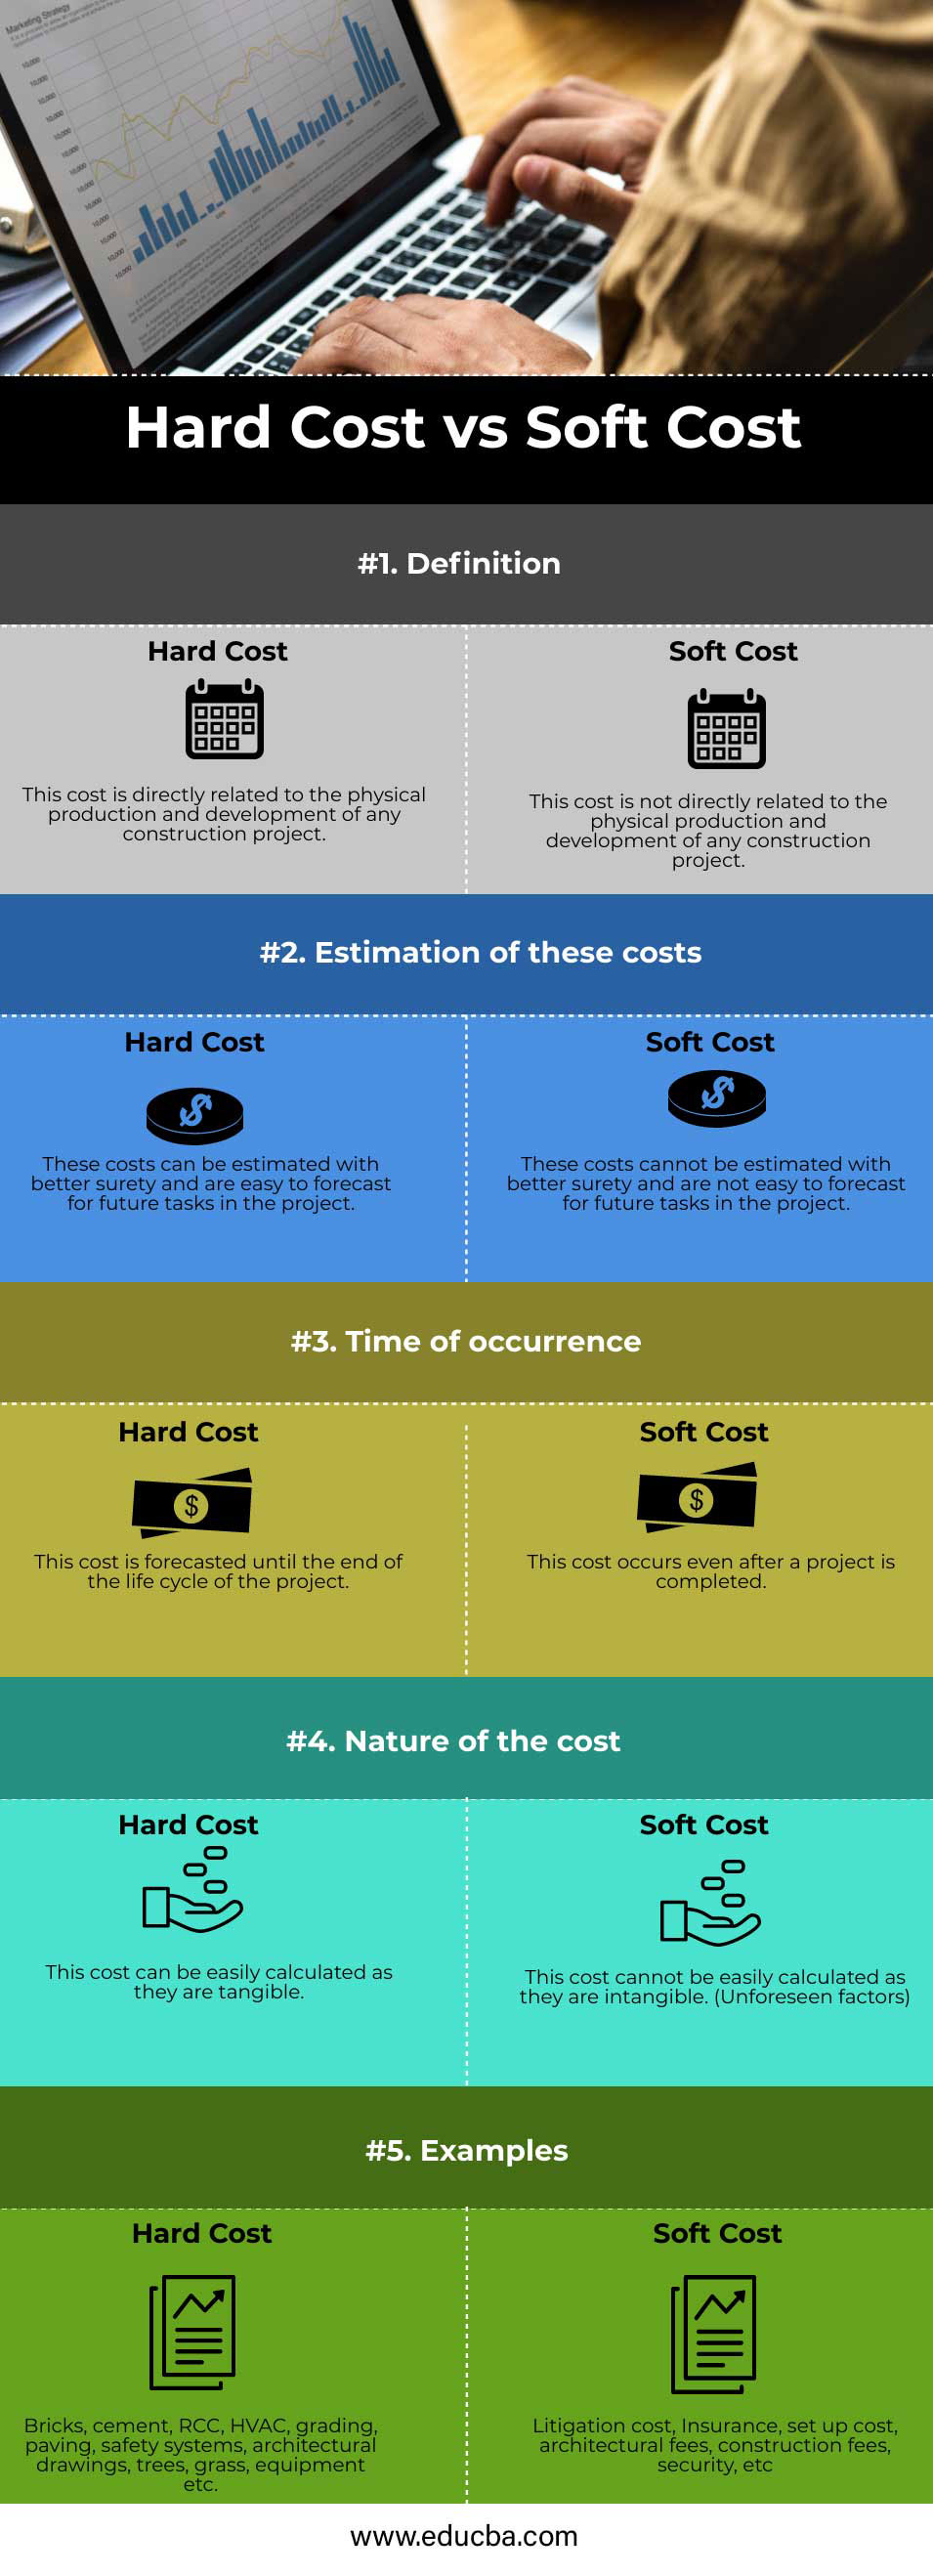 Hard-Cost-vs-Soft-Cost-info